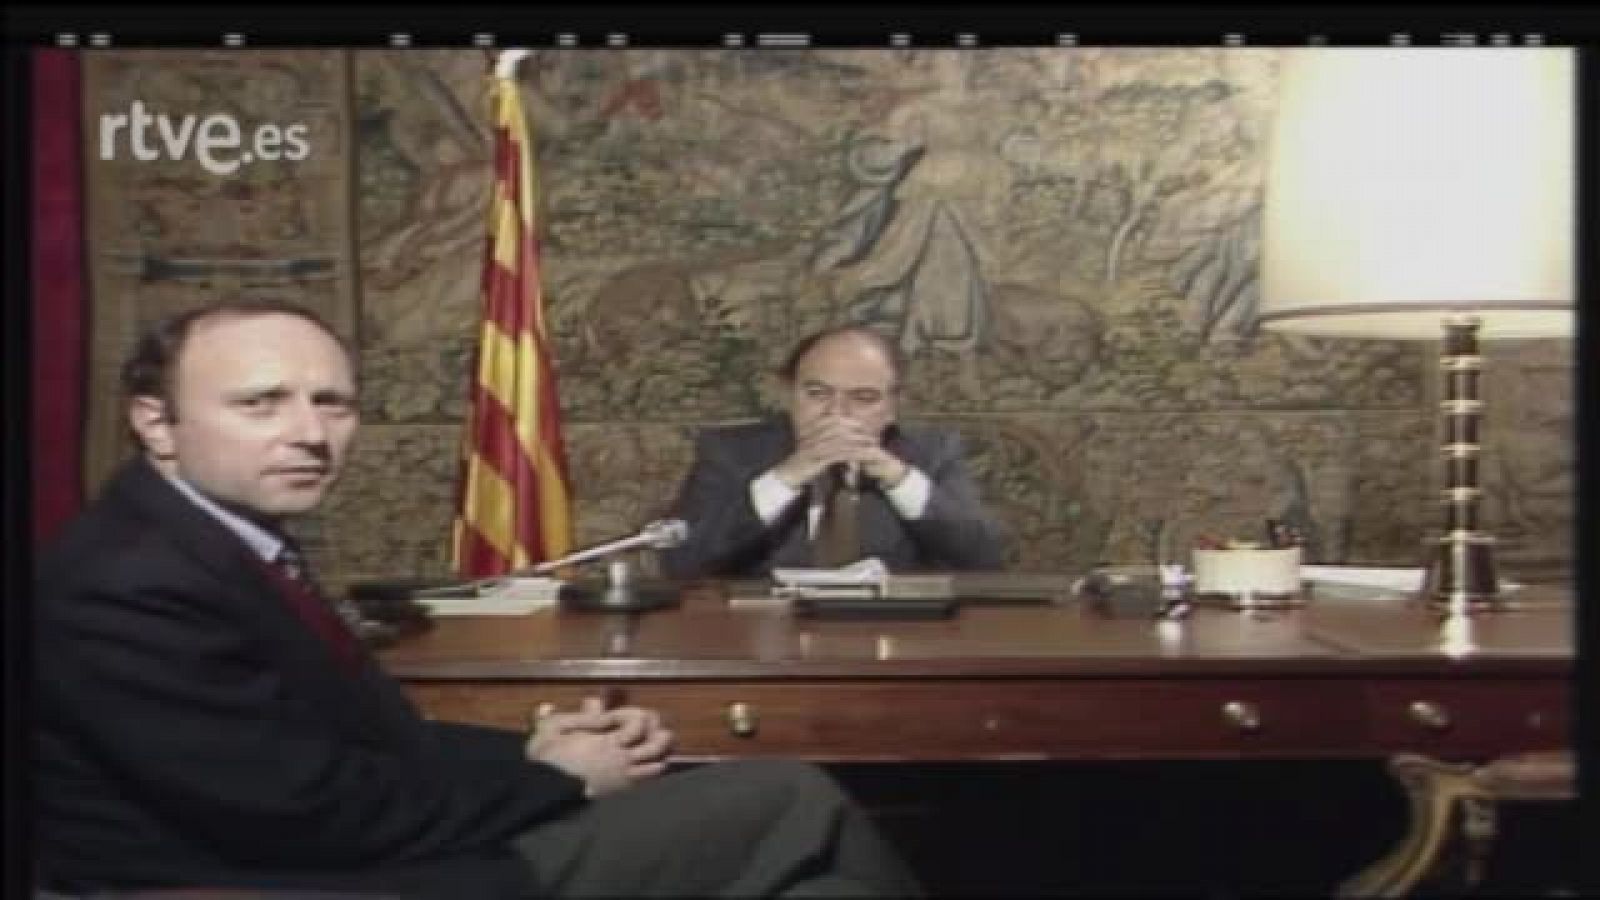 Arxiu TVE Catalunya - Entrevista a Jordi Pujol l'endemà del 23F